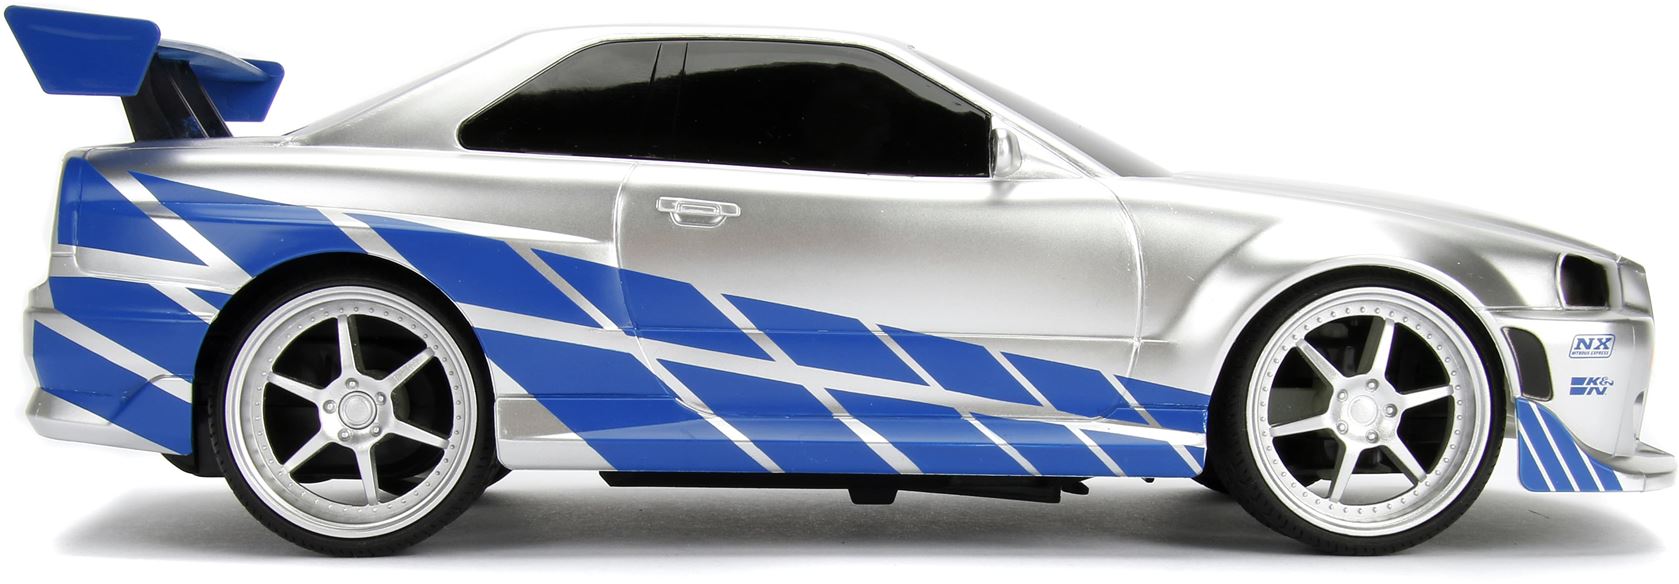 Fast-Furious-RC-Nissan-Skyline-GTR-1-16